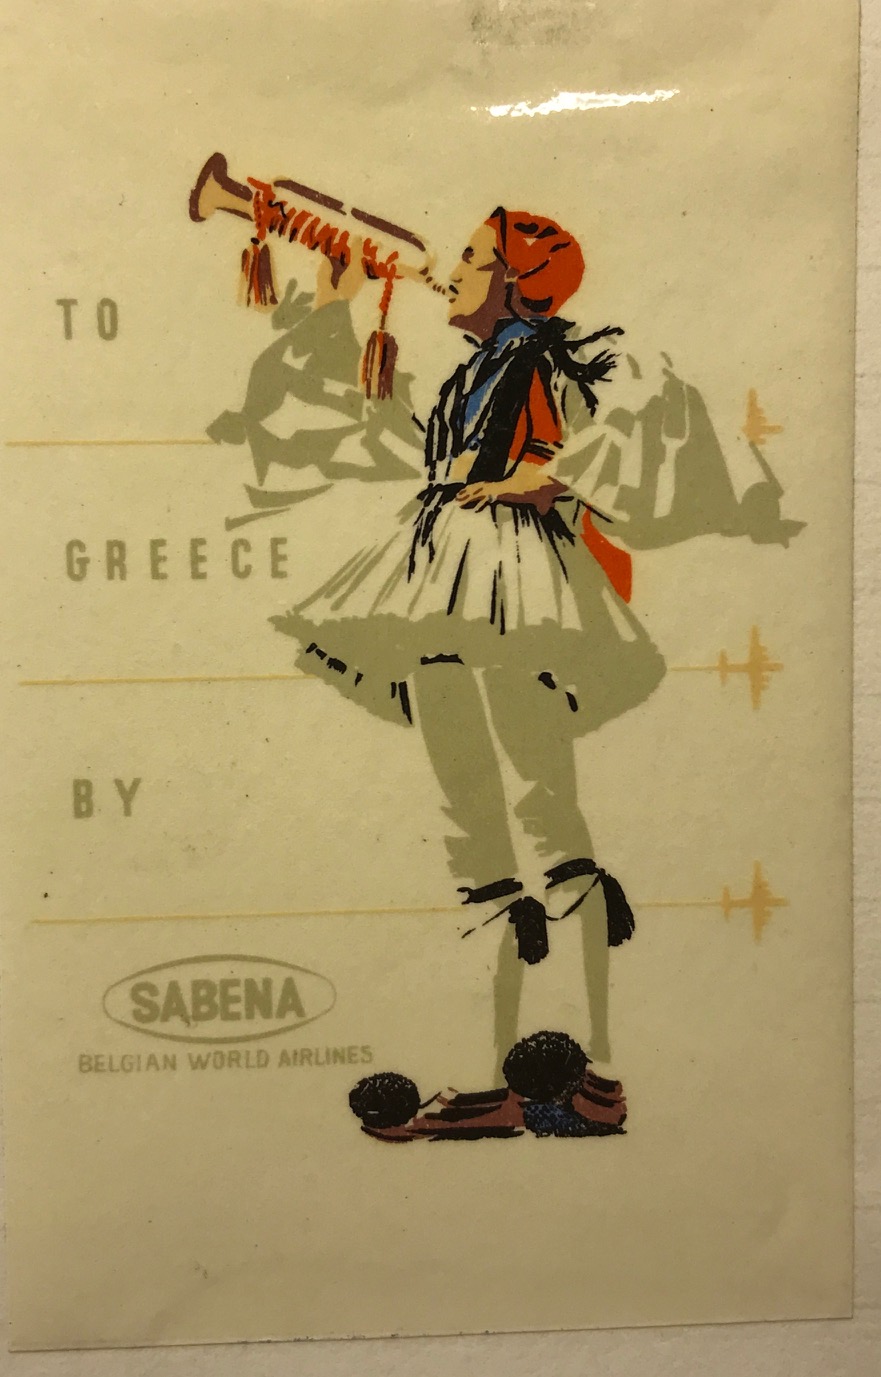 Trevor's Stickies: To Greece by Sabena.